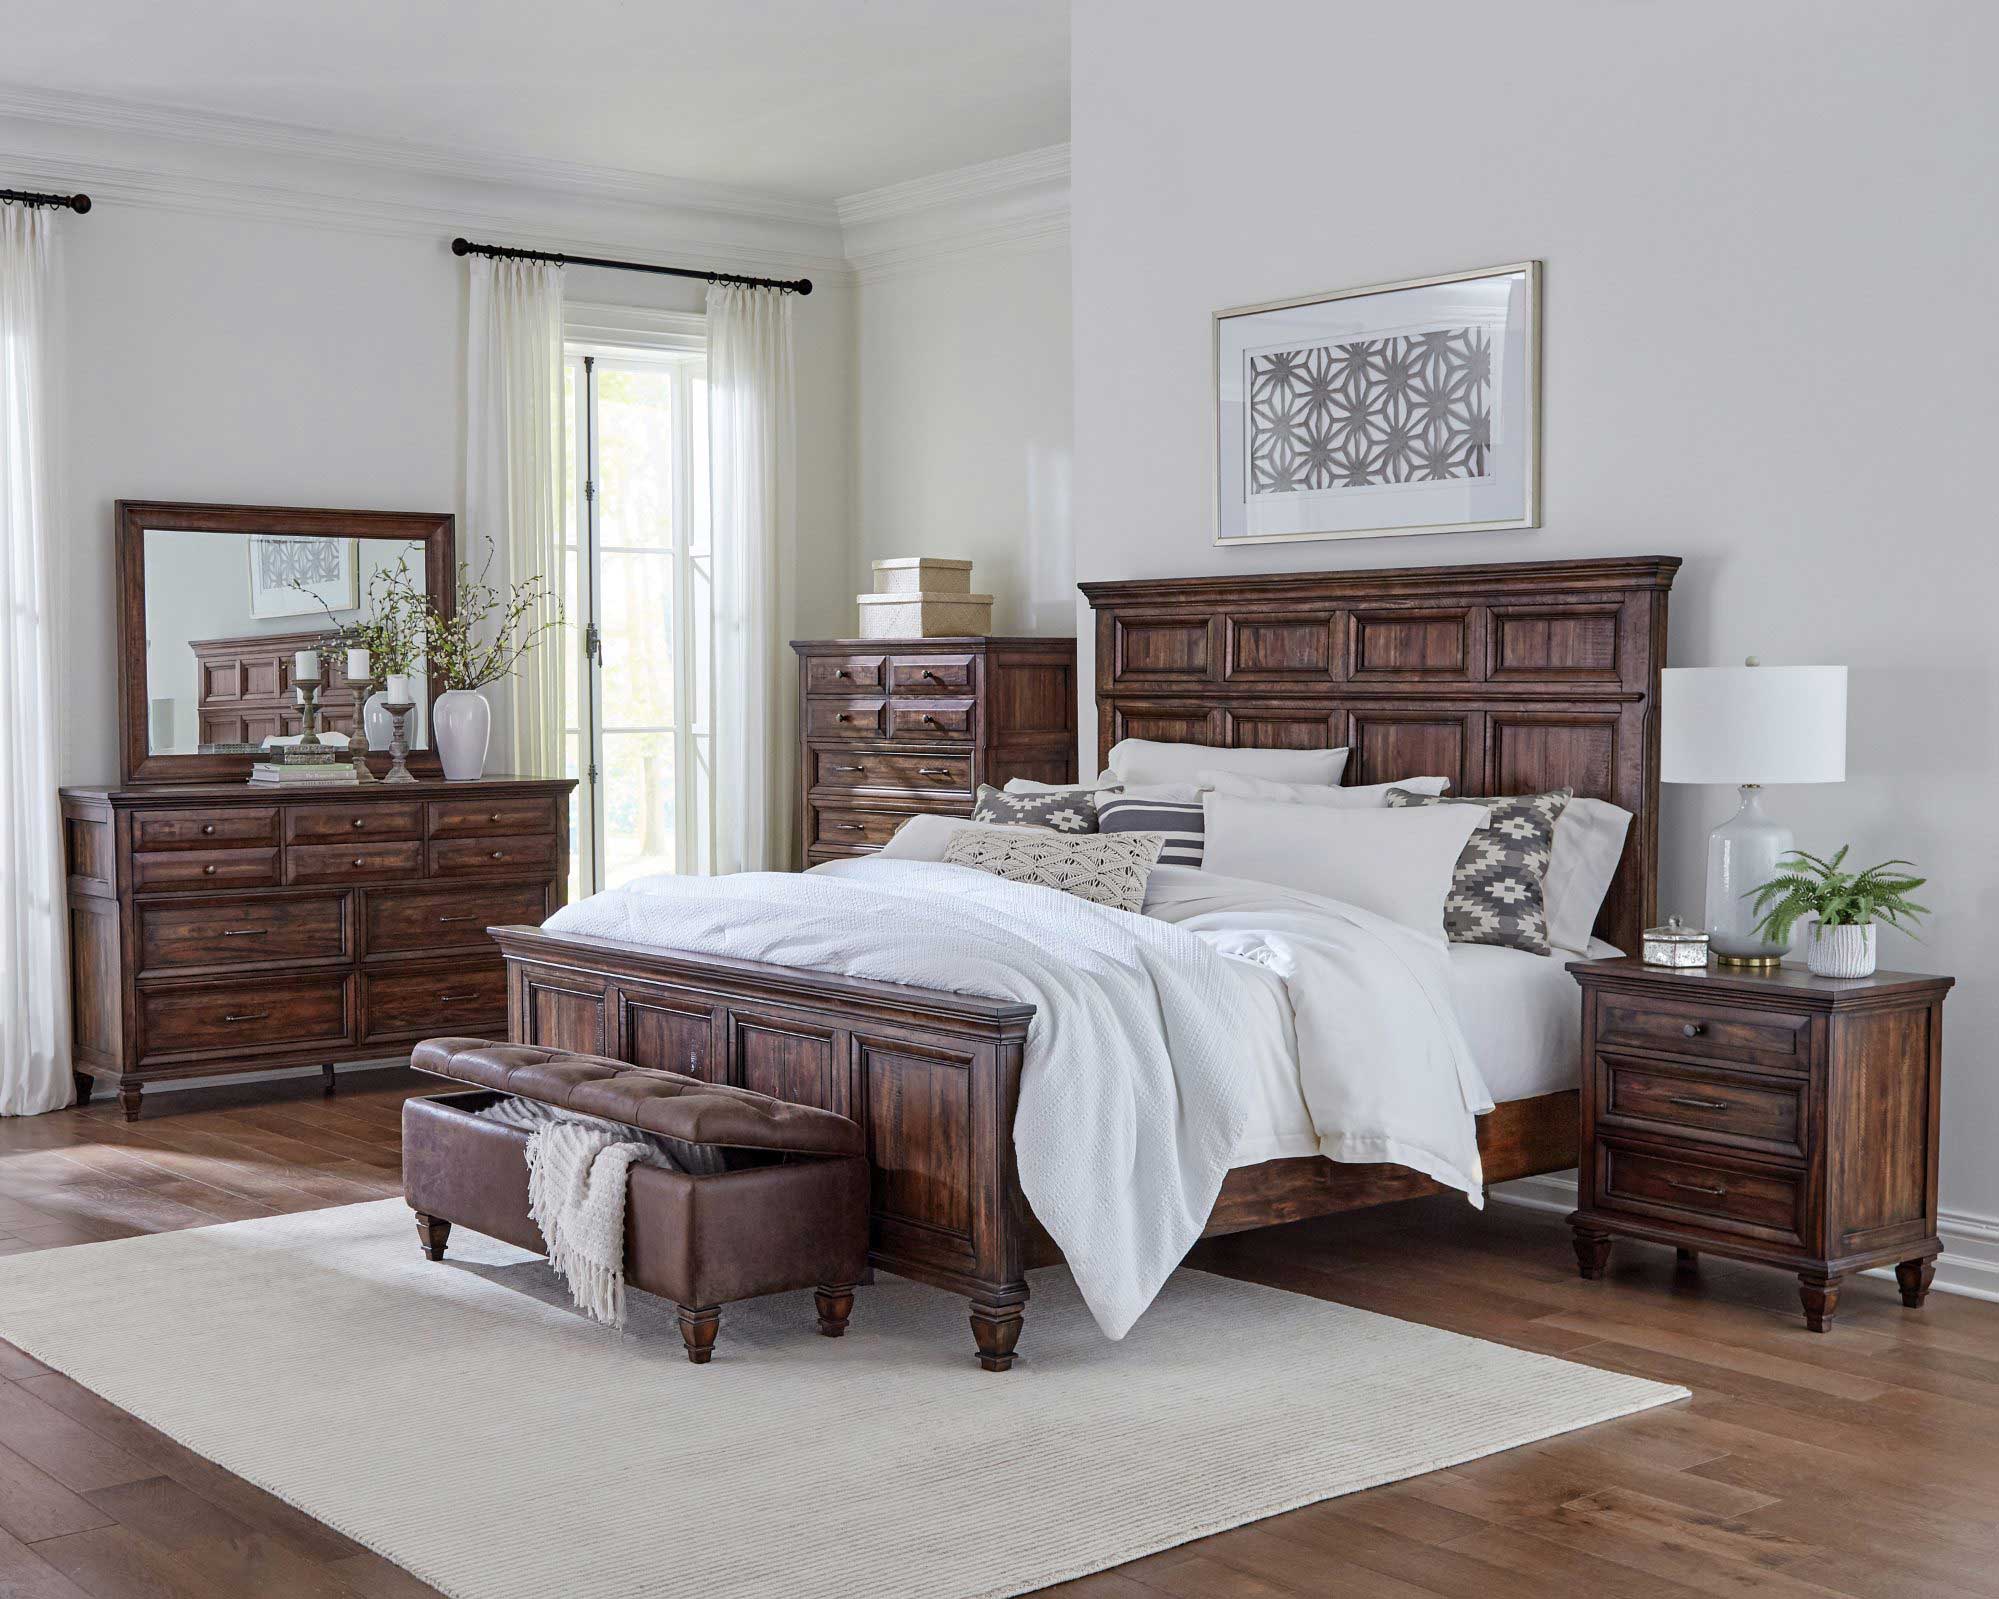 Photo of an Avenue 4-piece queen bedroom set